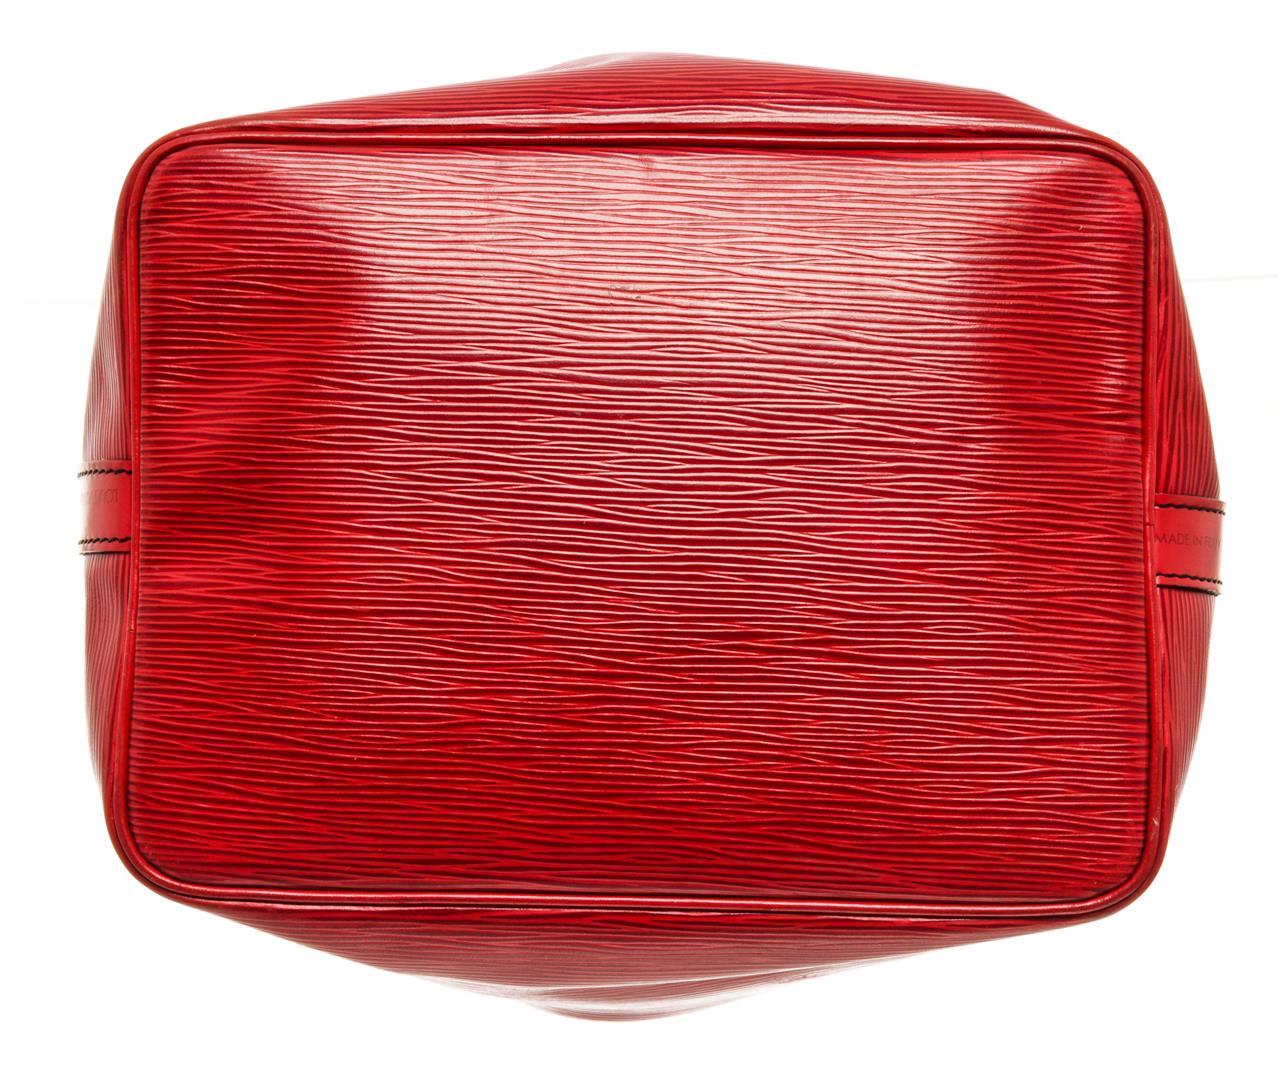 Louis Vuitton Red Epi Leather Petit Noe Shoulder Bag